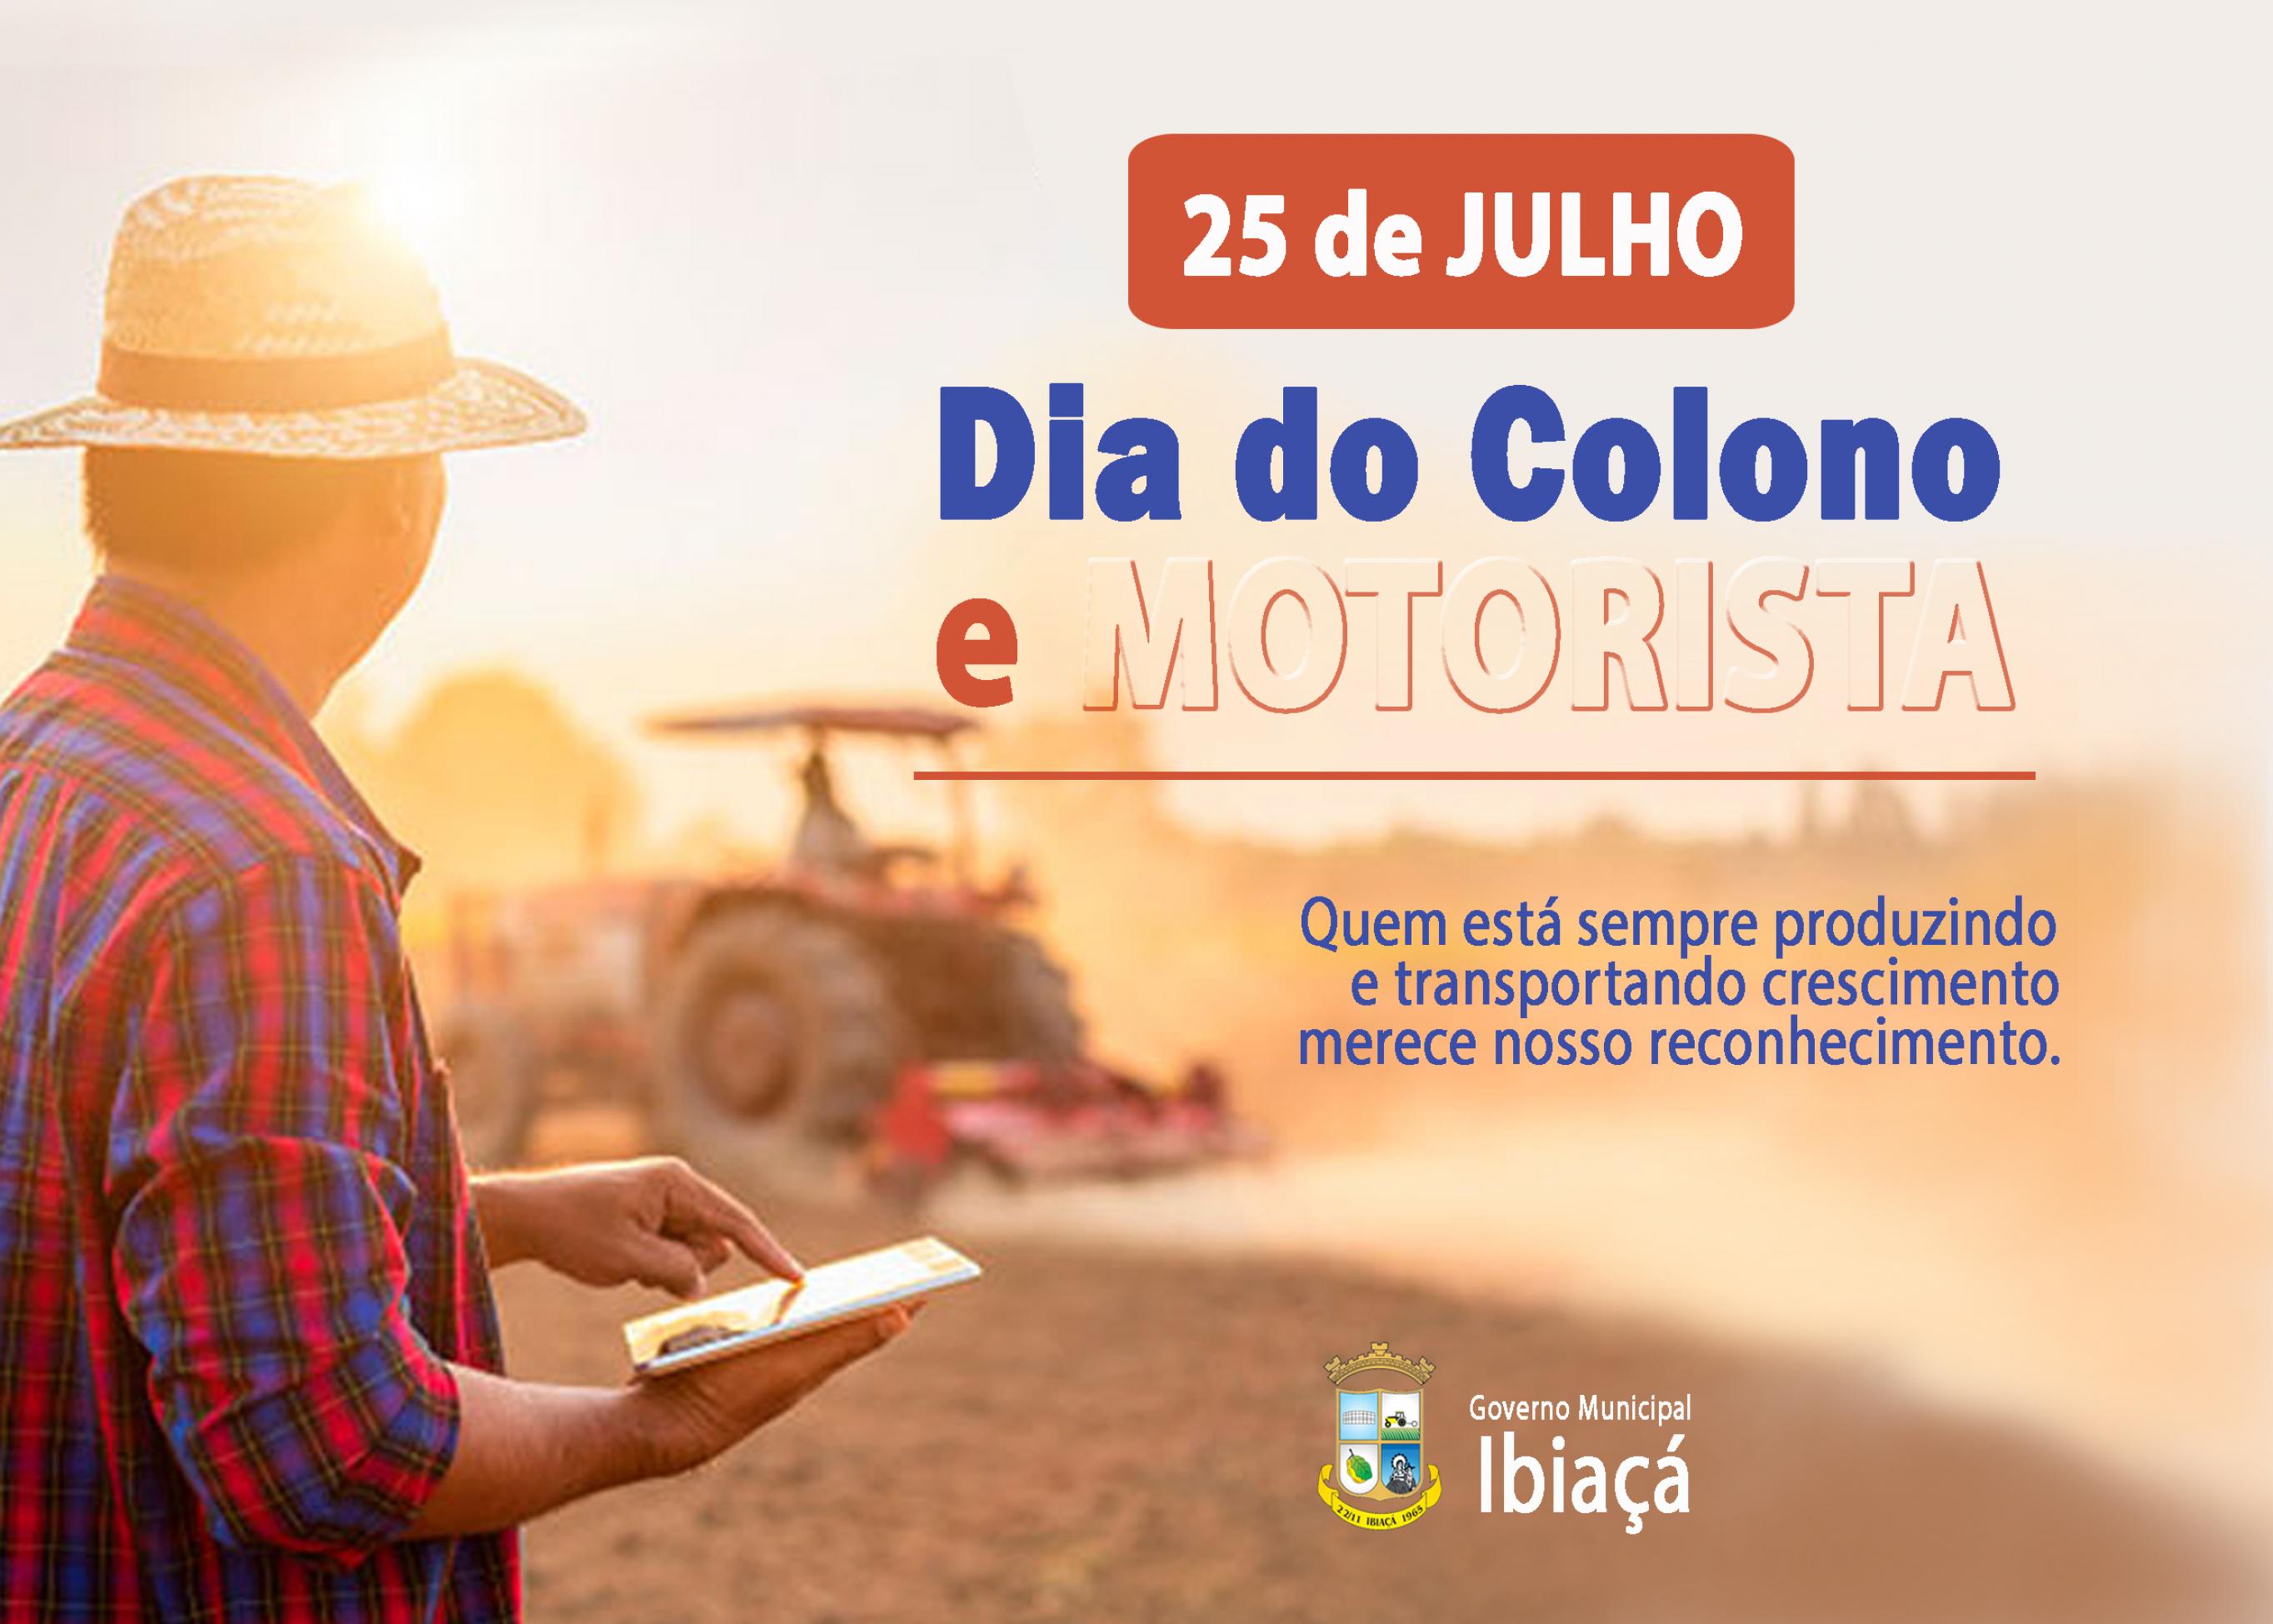 Feliz dia para Colonos e Motoristas. Obrigado pelo crescimento e  desenvolvimento proporcionado. – Prefeitura Municipal de Ibirubá